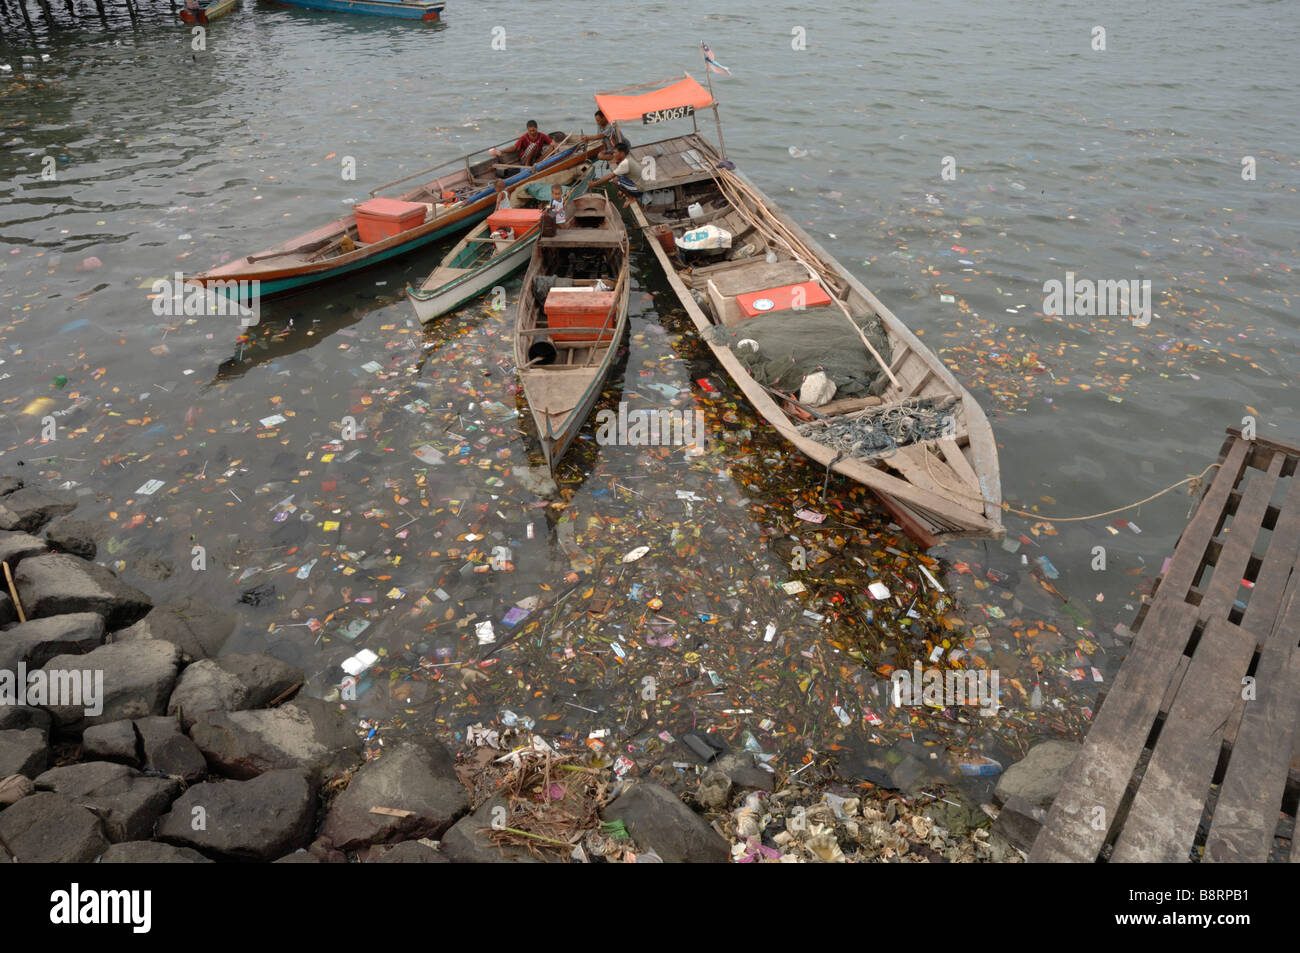 Bateaux de pêche en bois entourée de litière dans Sabah Malaisie Bornéo Semporna Harbour en Asie du sud-est Banque D'Images